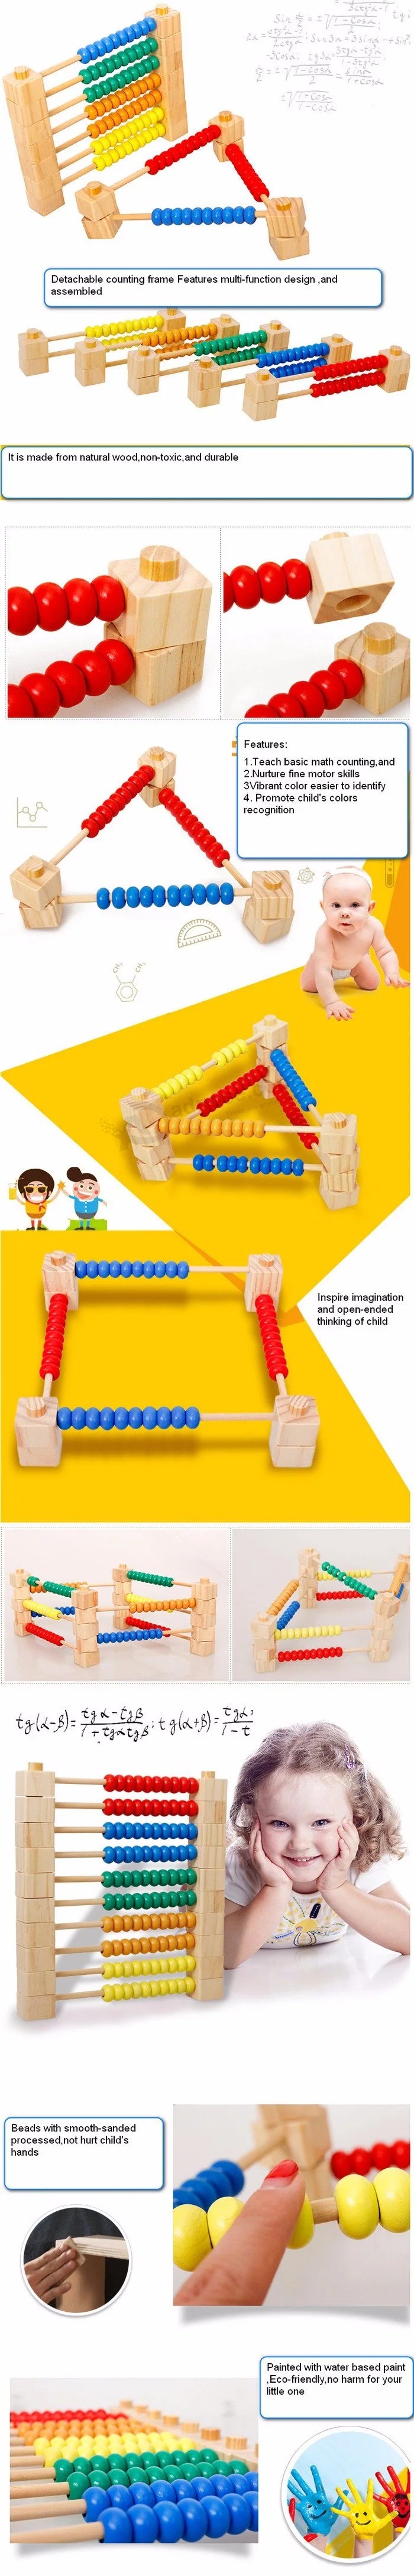 Desenvolvimento inteligente Matemática DIY de madeira Labirinto de contas Brinquedo educacional pré-escolar (GY-0004)